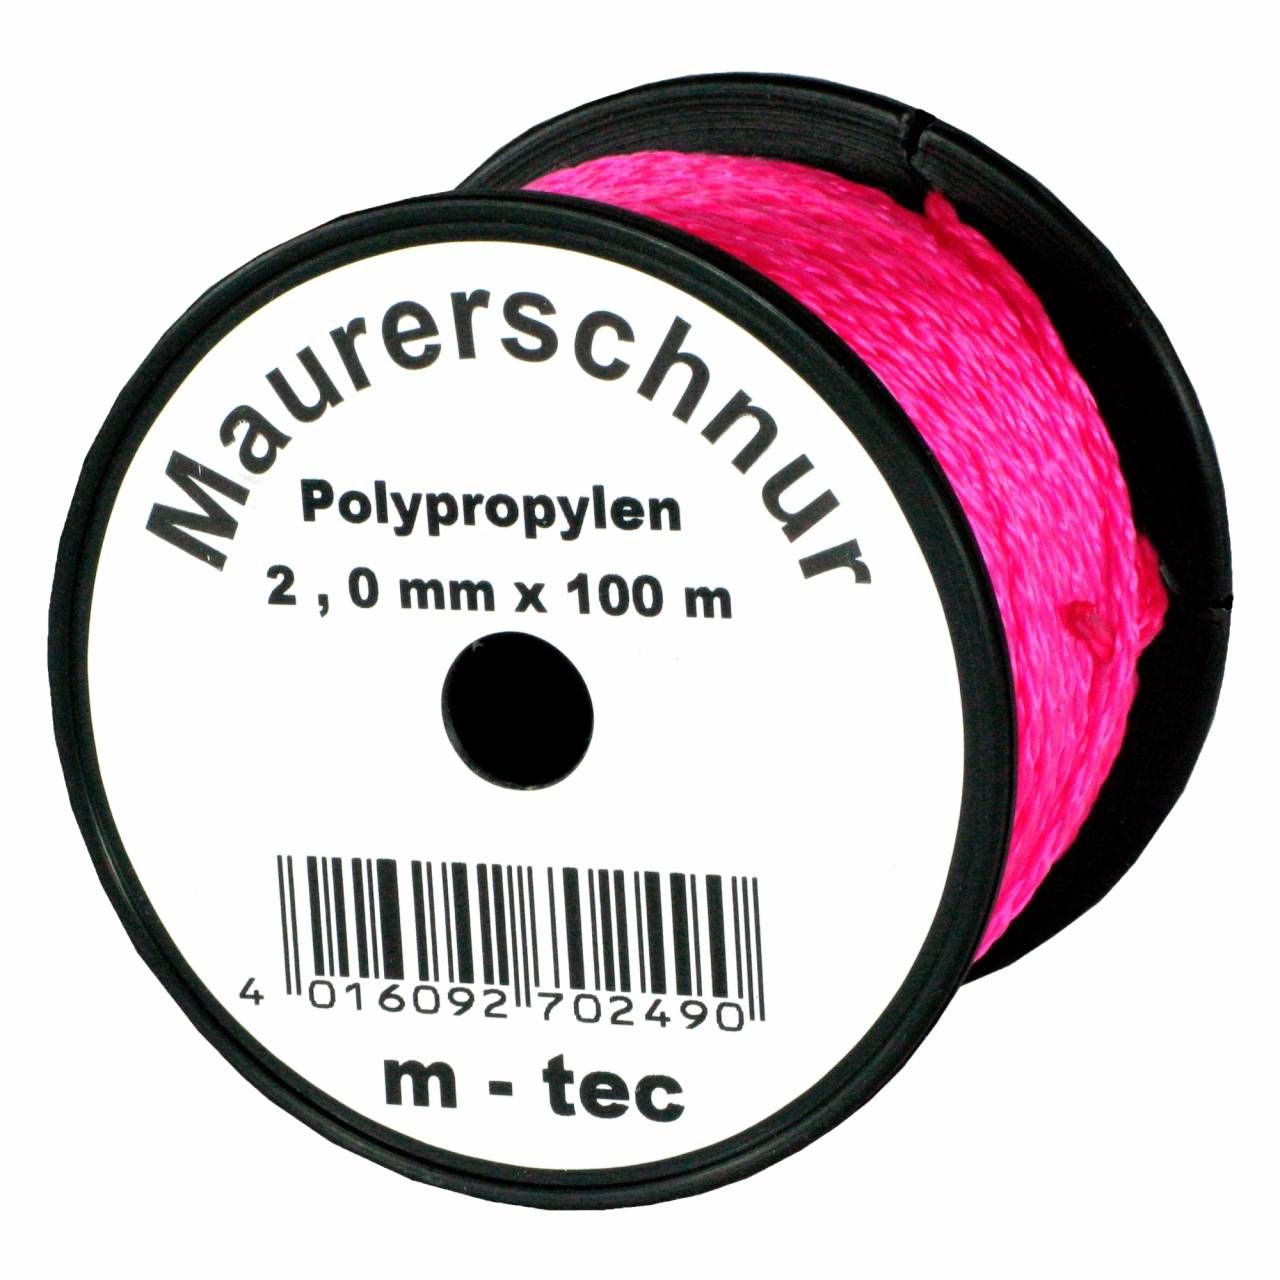 Lot-Maurerschnur 50 m x Ø 2,0 mm Pink-Fluoreszierend